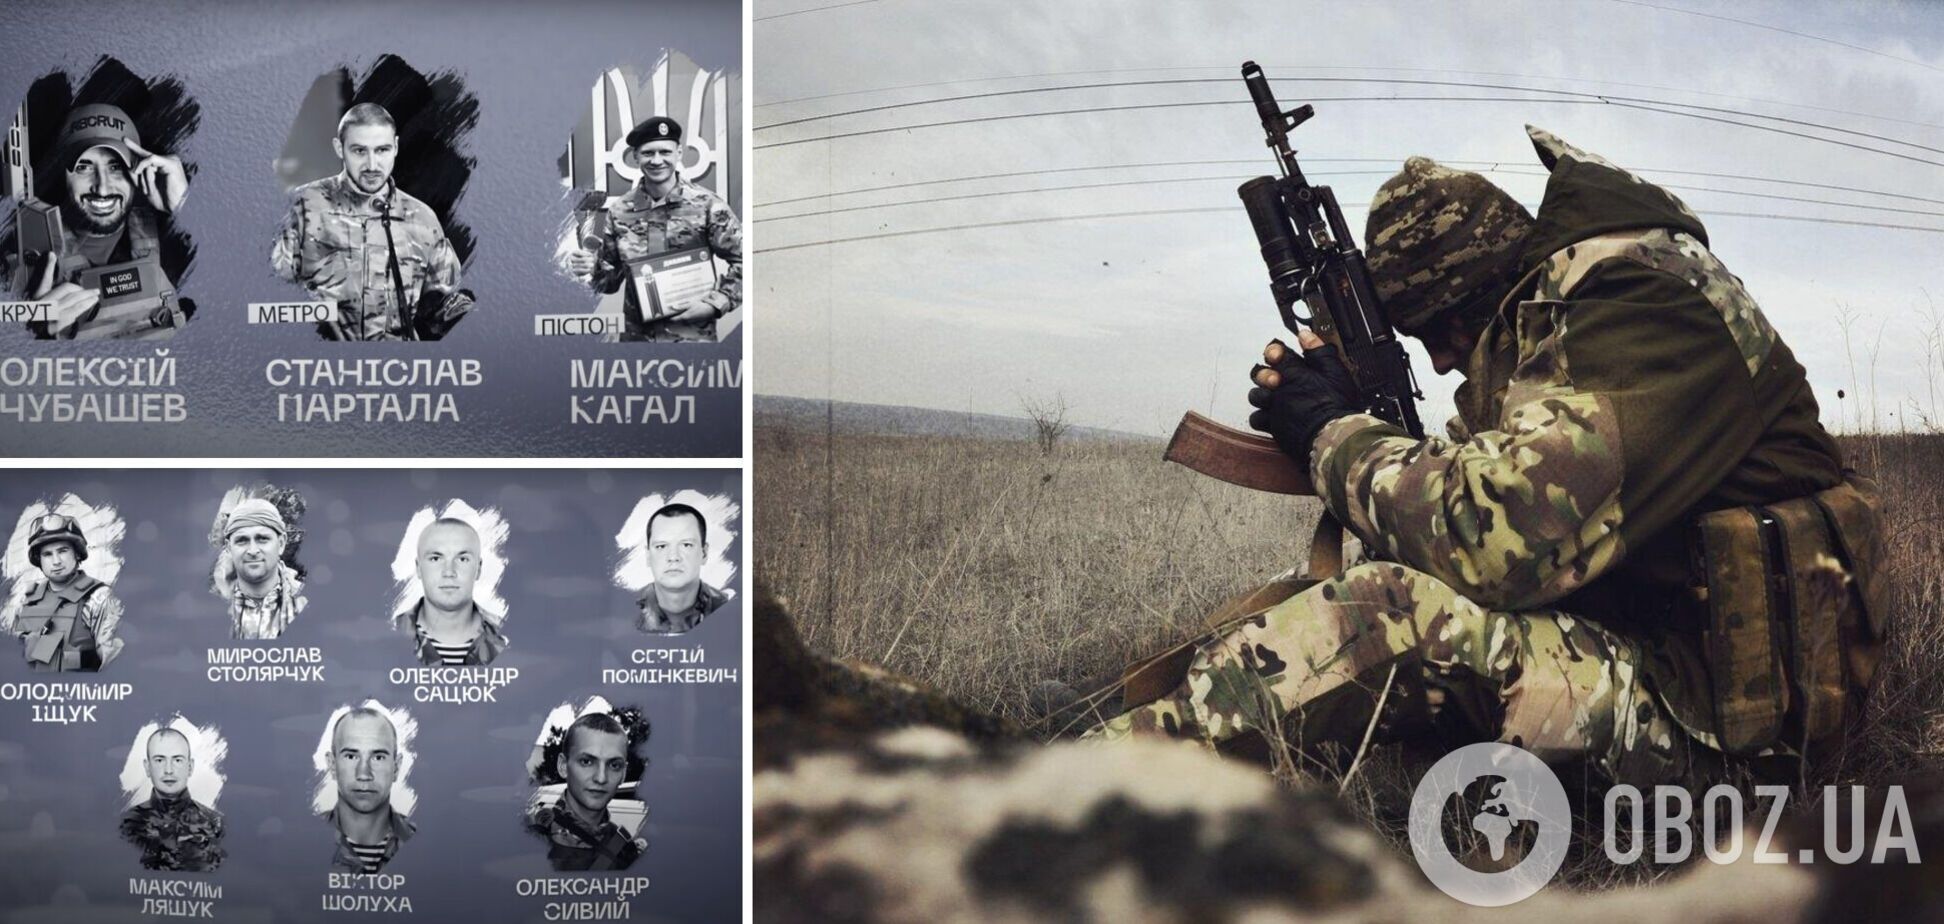 Их героизм навсегда останется в истории: в МВД сняли фильм-хронику, посвященный памяти защитников Украины. Видео